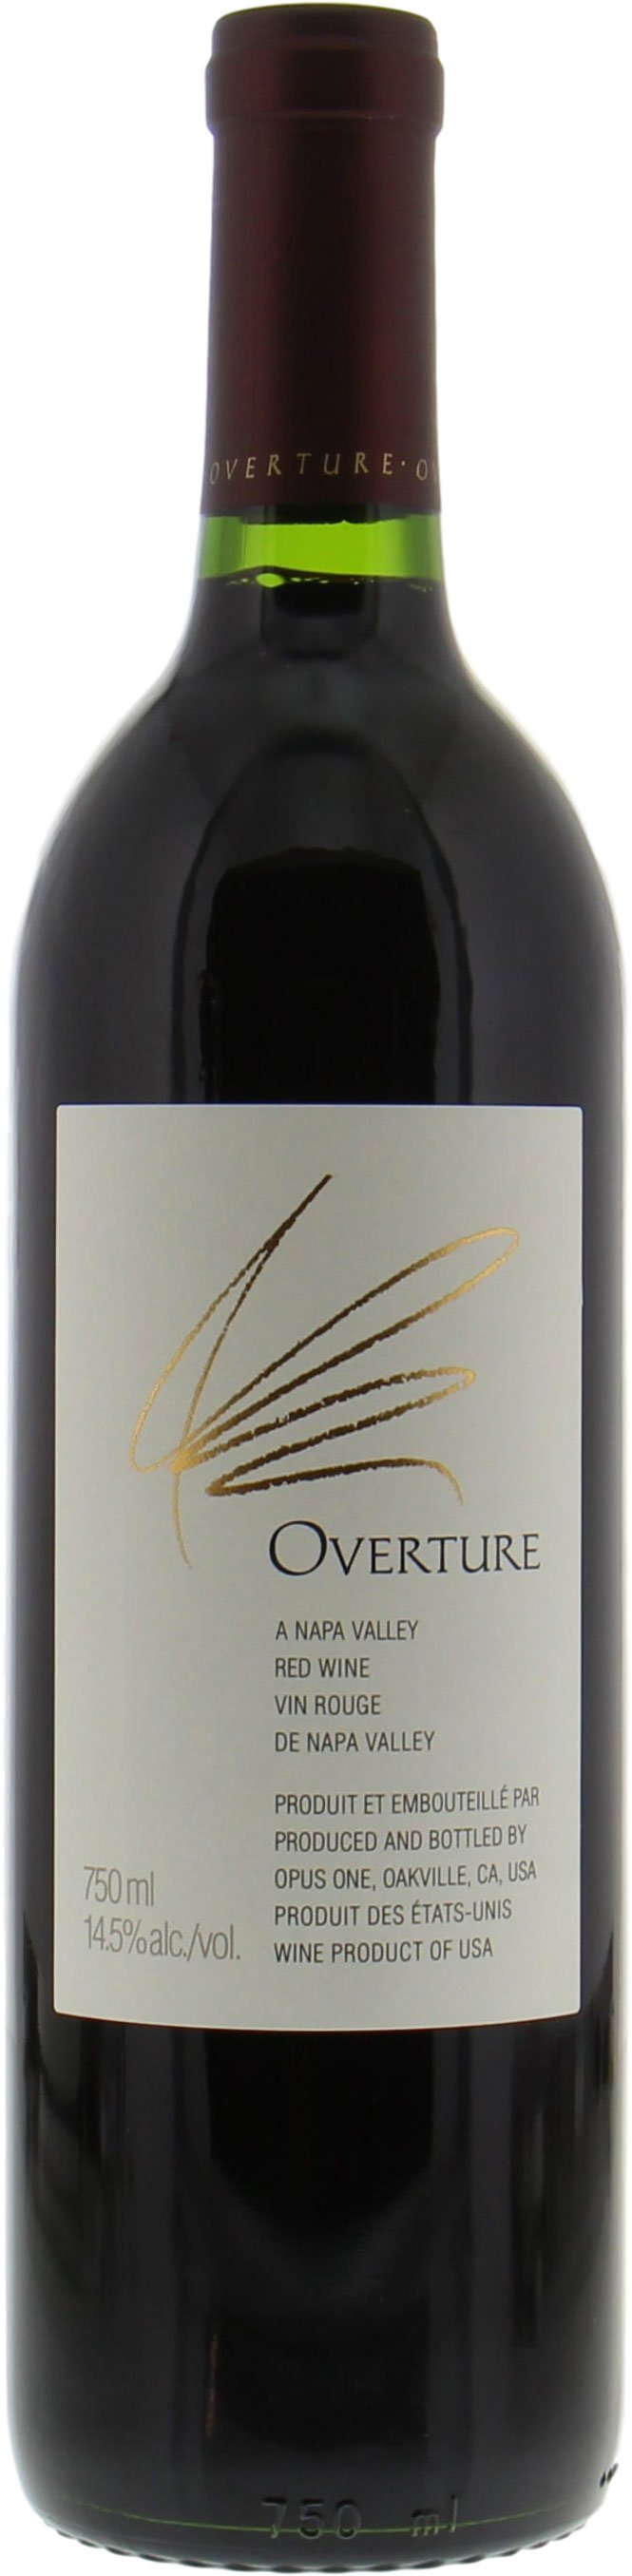 opus one wine 2017 price